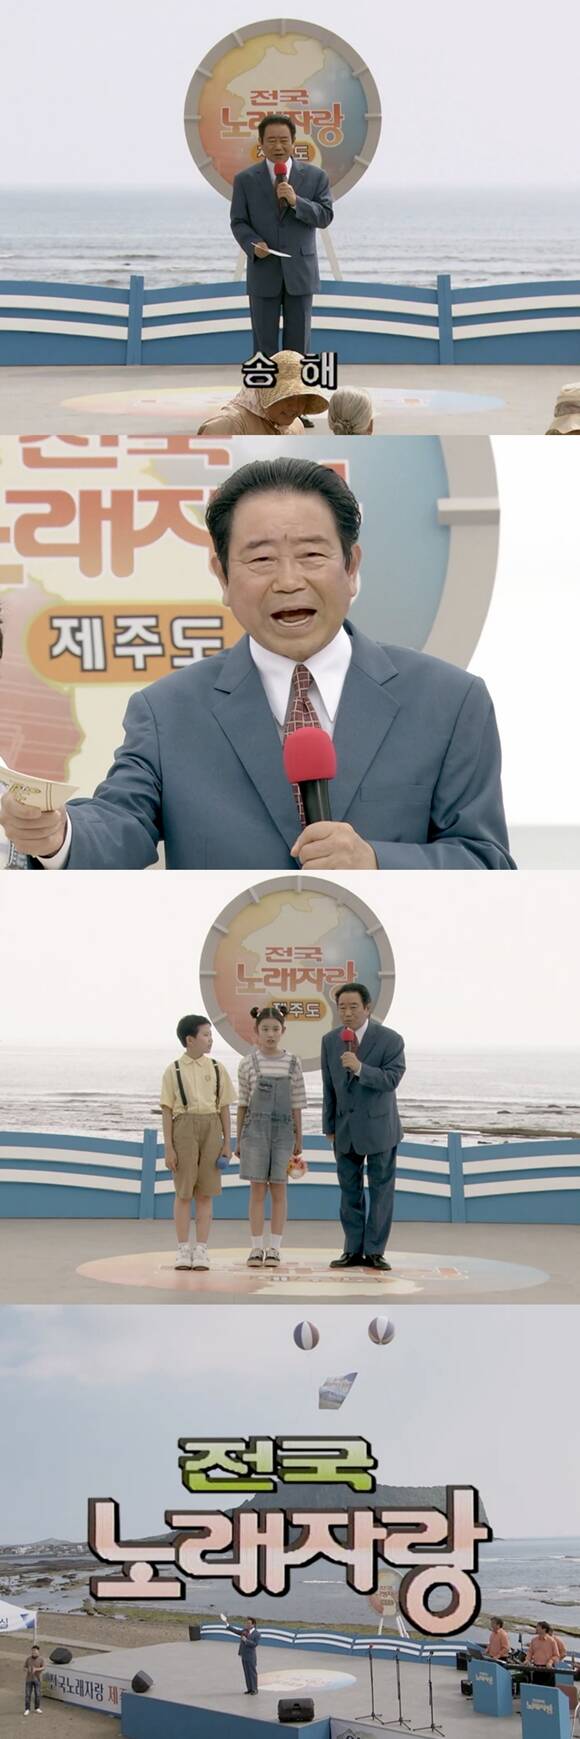 JTBC 토일드라마 웰컴투 삼달리에서 딥페이크 기술을 활용해 故 송해를 출연시켰다. /JTBC